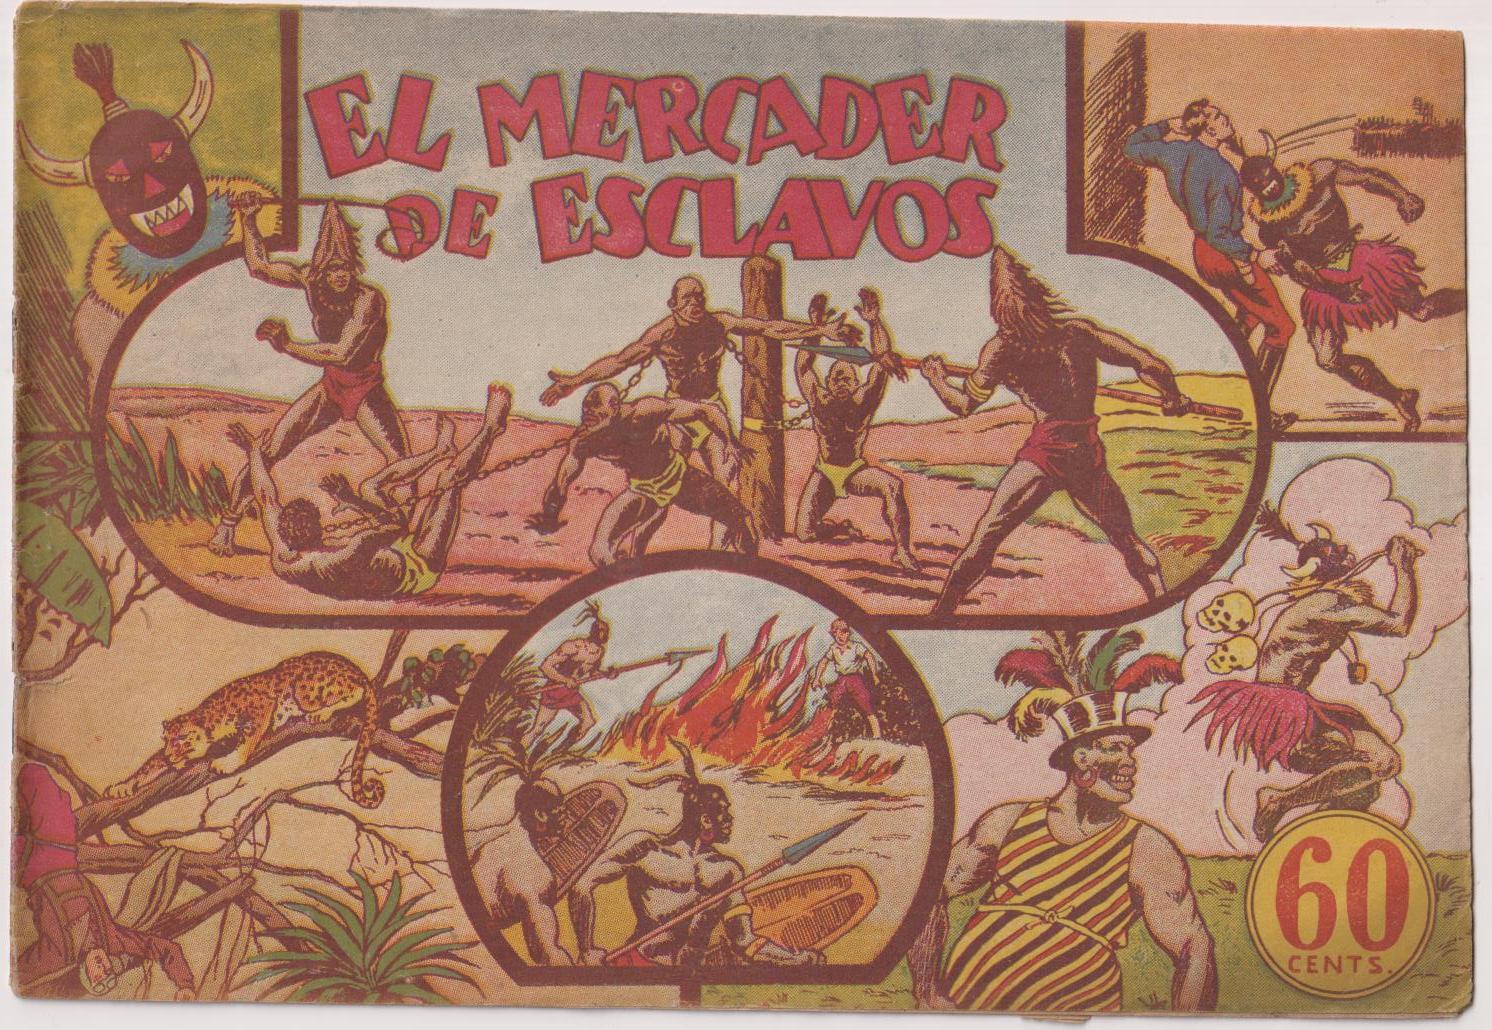 Jorge y Fernando. El mercader de esclavos. Hispano Americana 1940